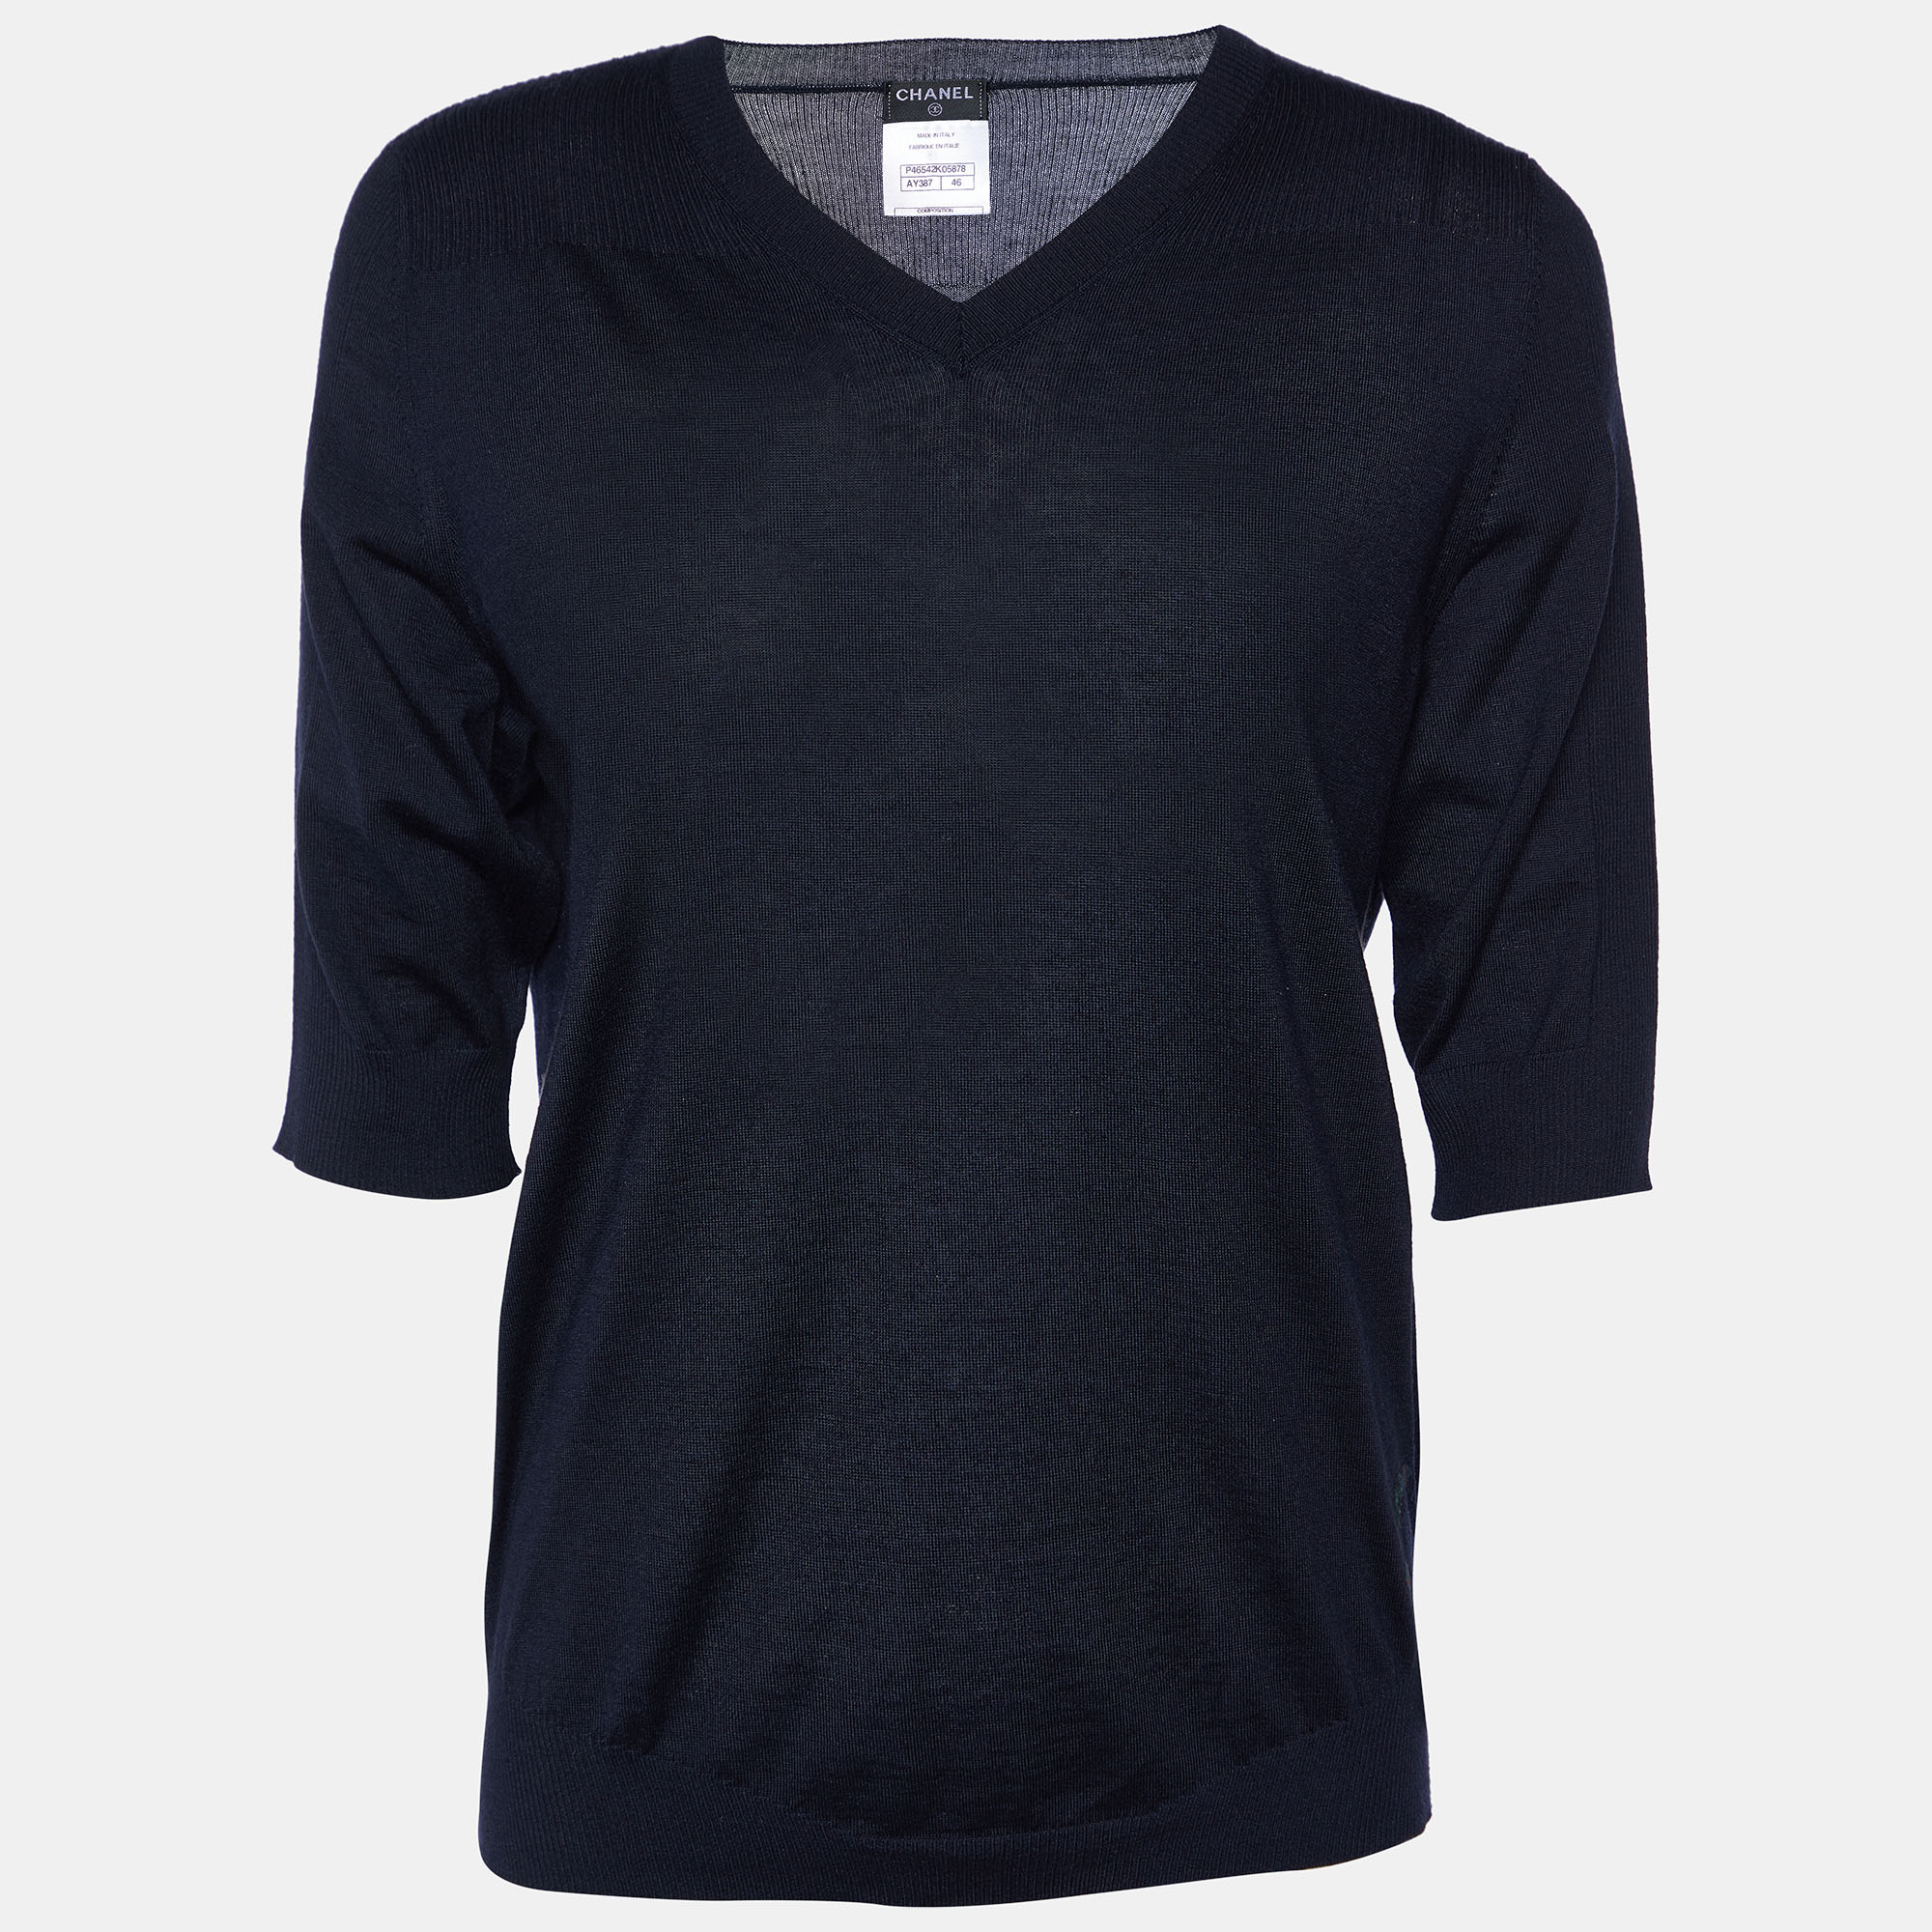 Chanel Dark Blue Cashmere & Silk Knit V-Neck Sweater XL